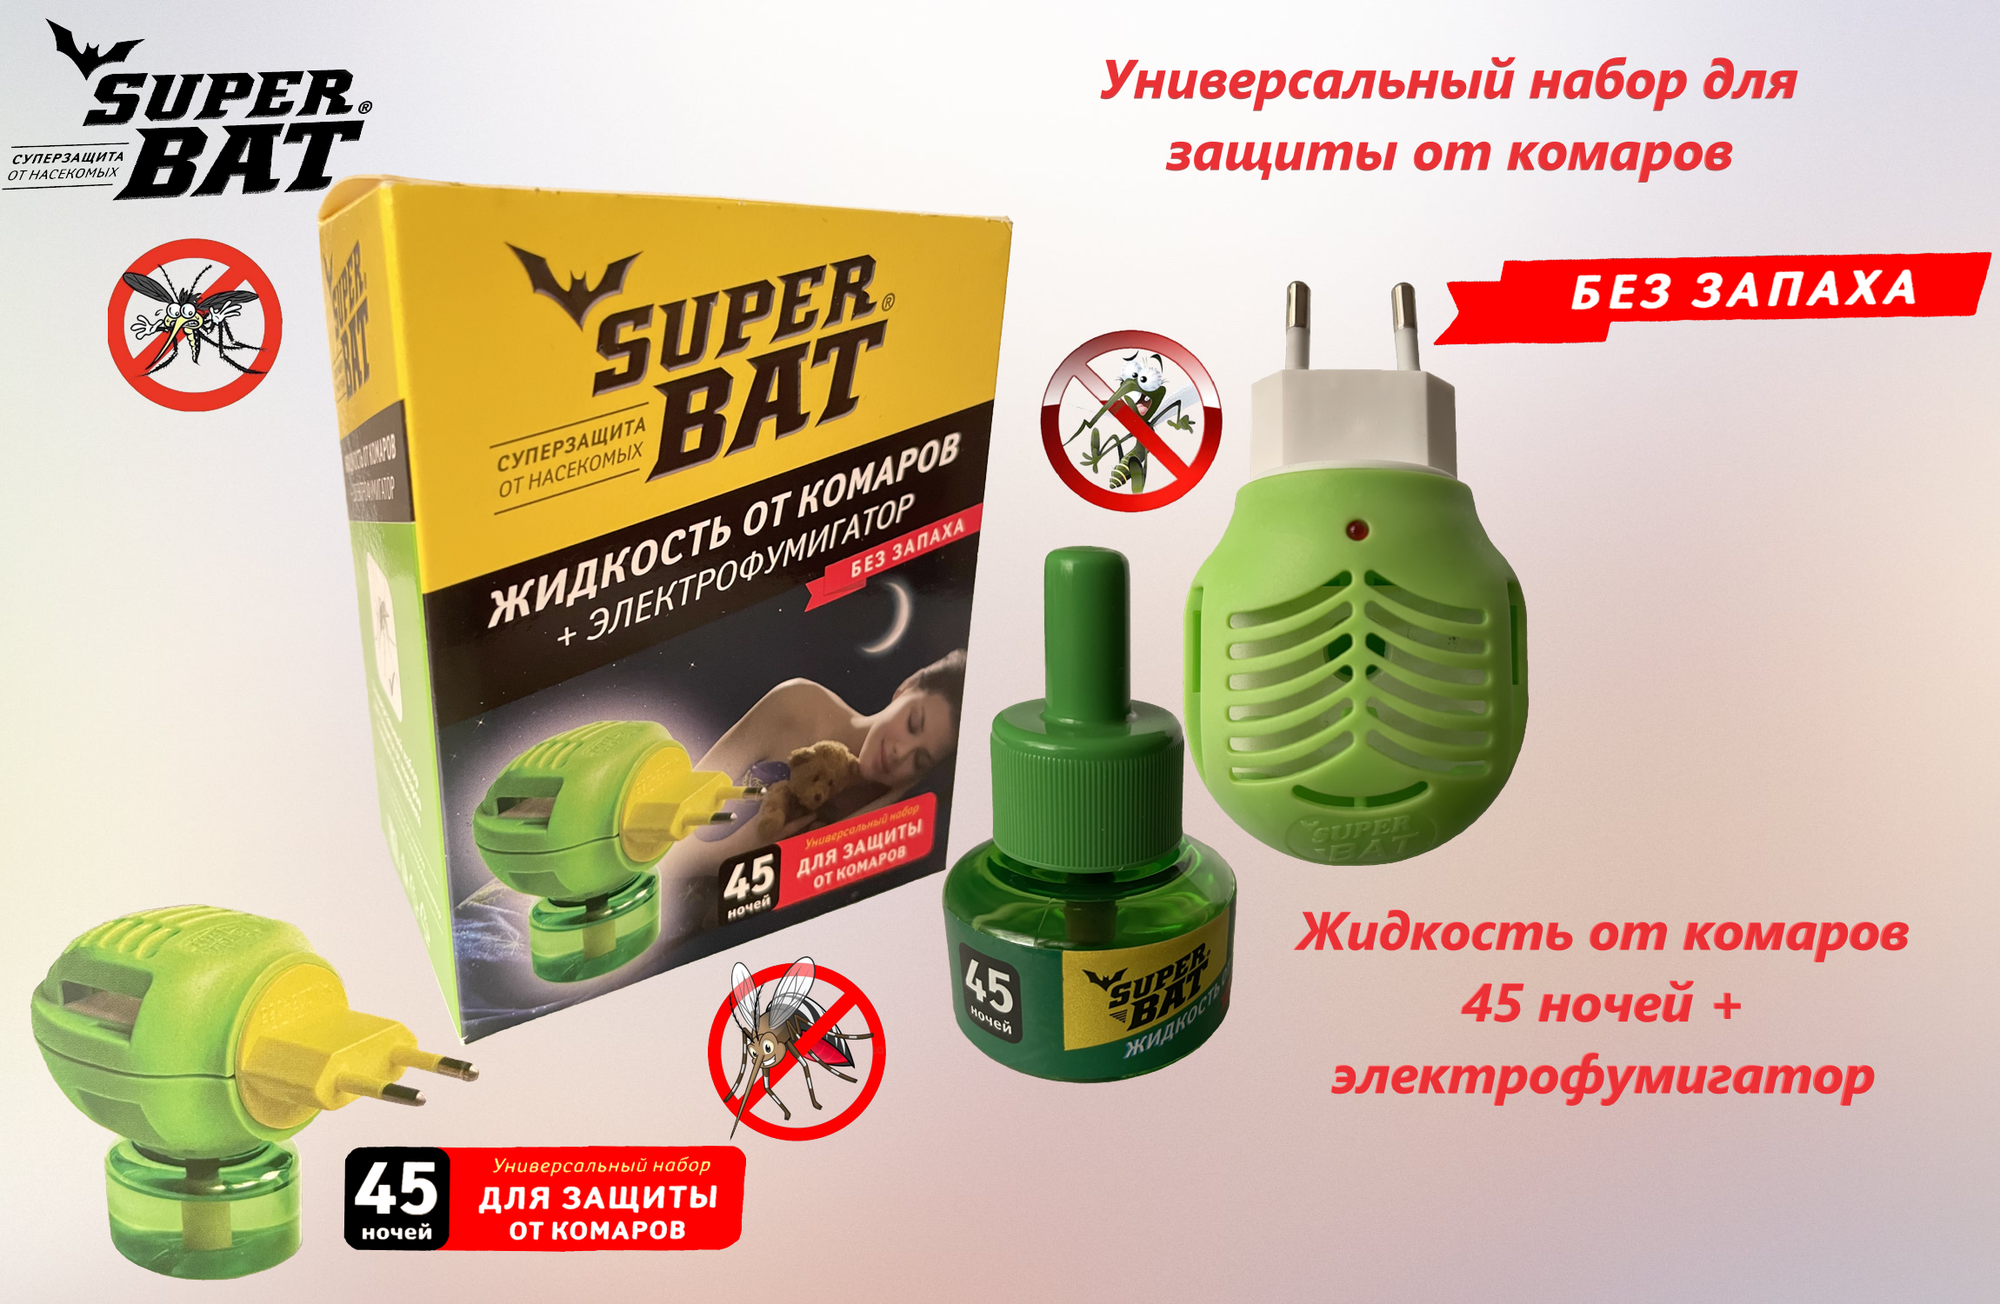 Комплект от комаров SuperBAT электрофумигатор универсальный + жидкость на 45 ночей